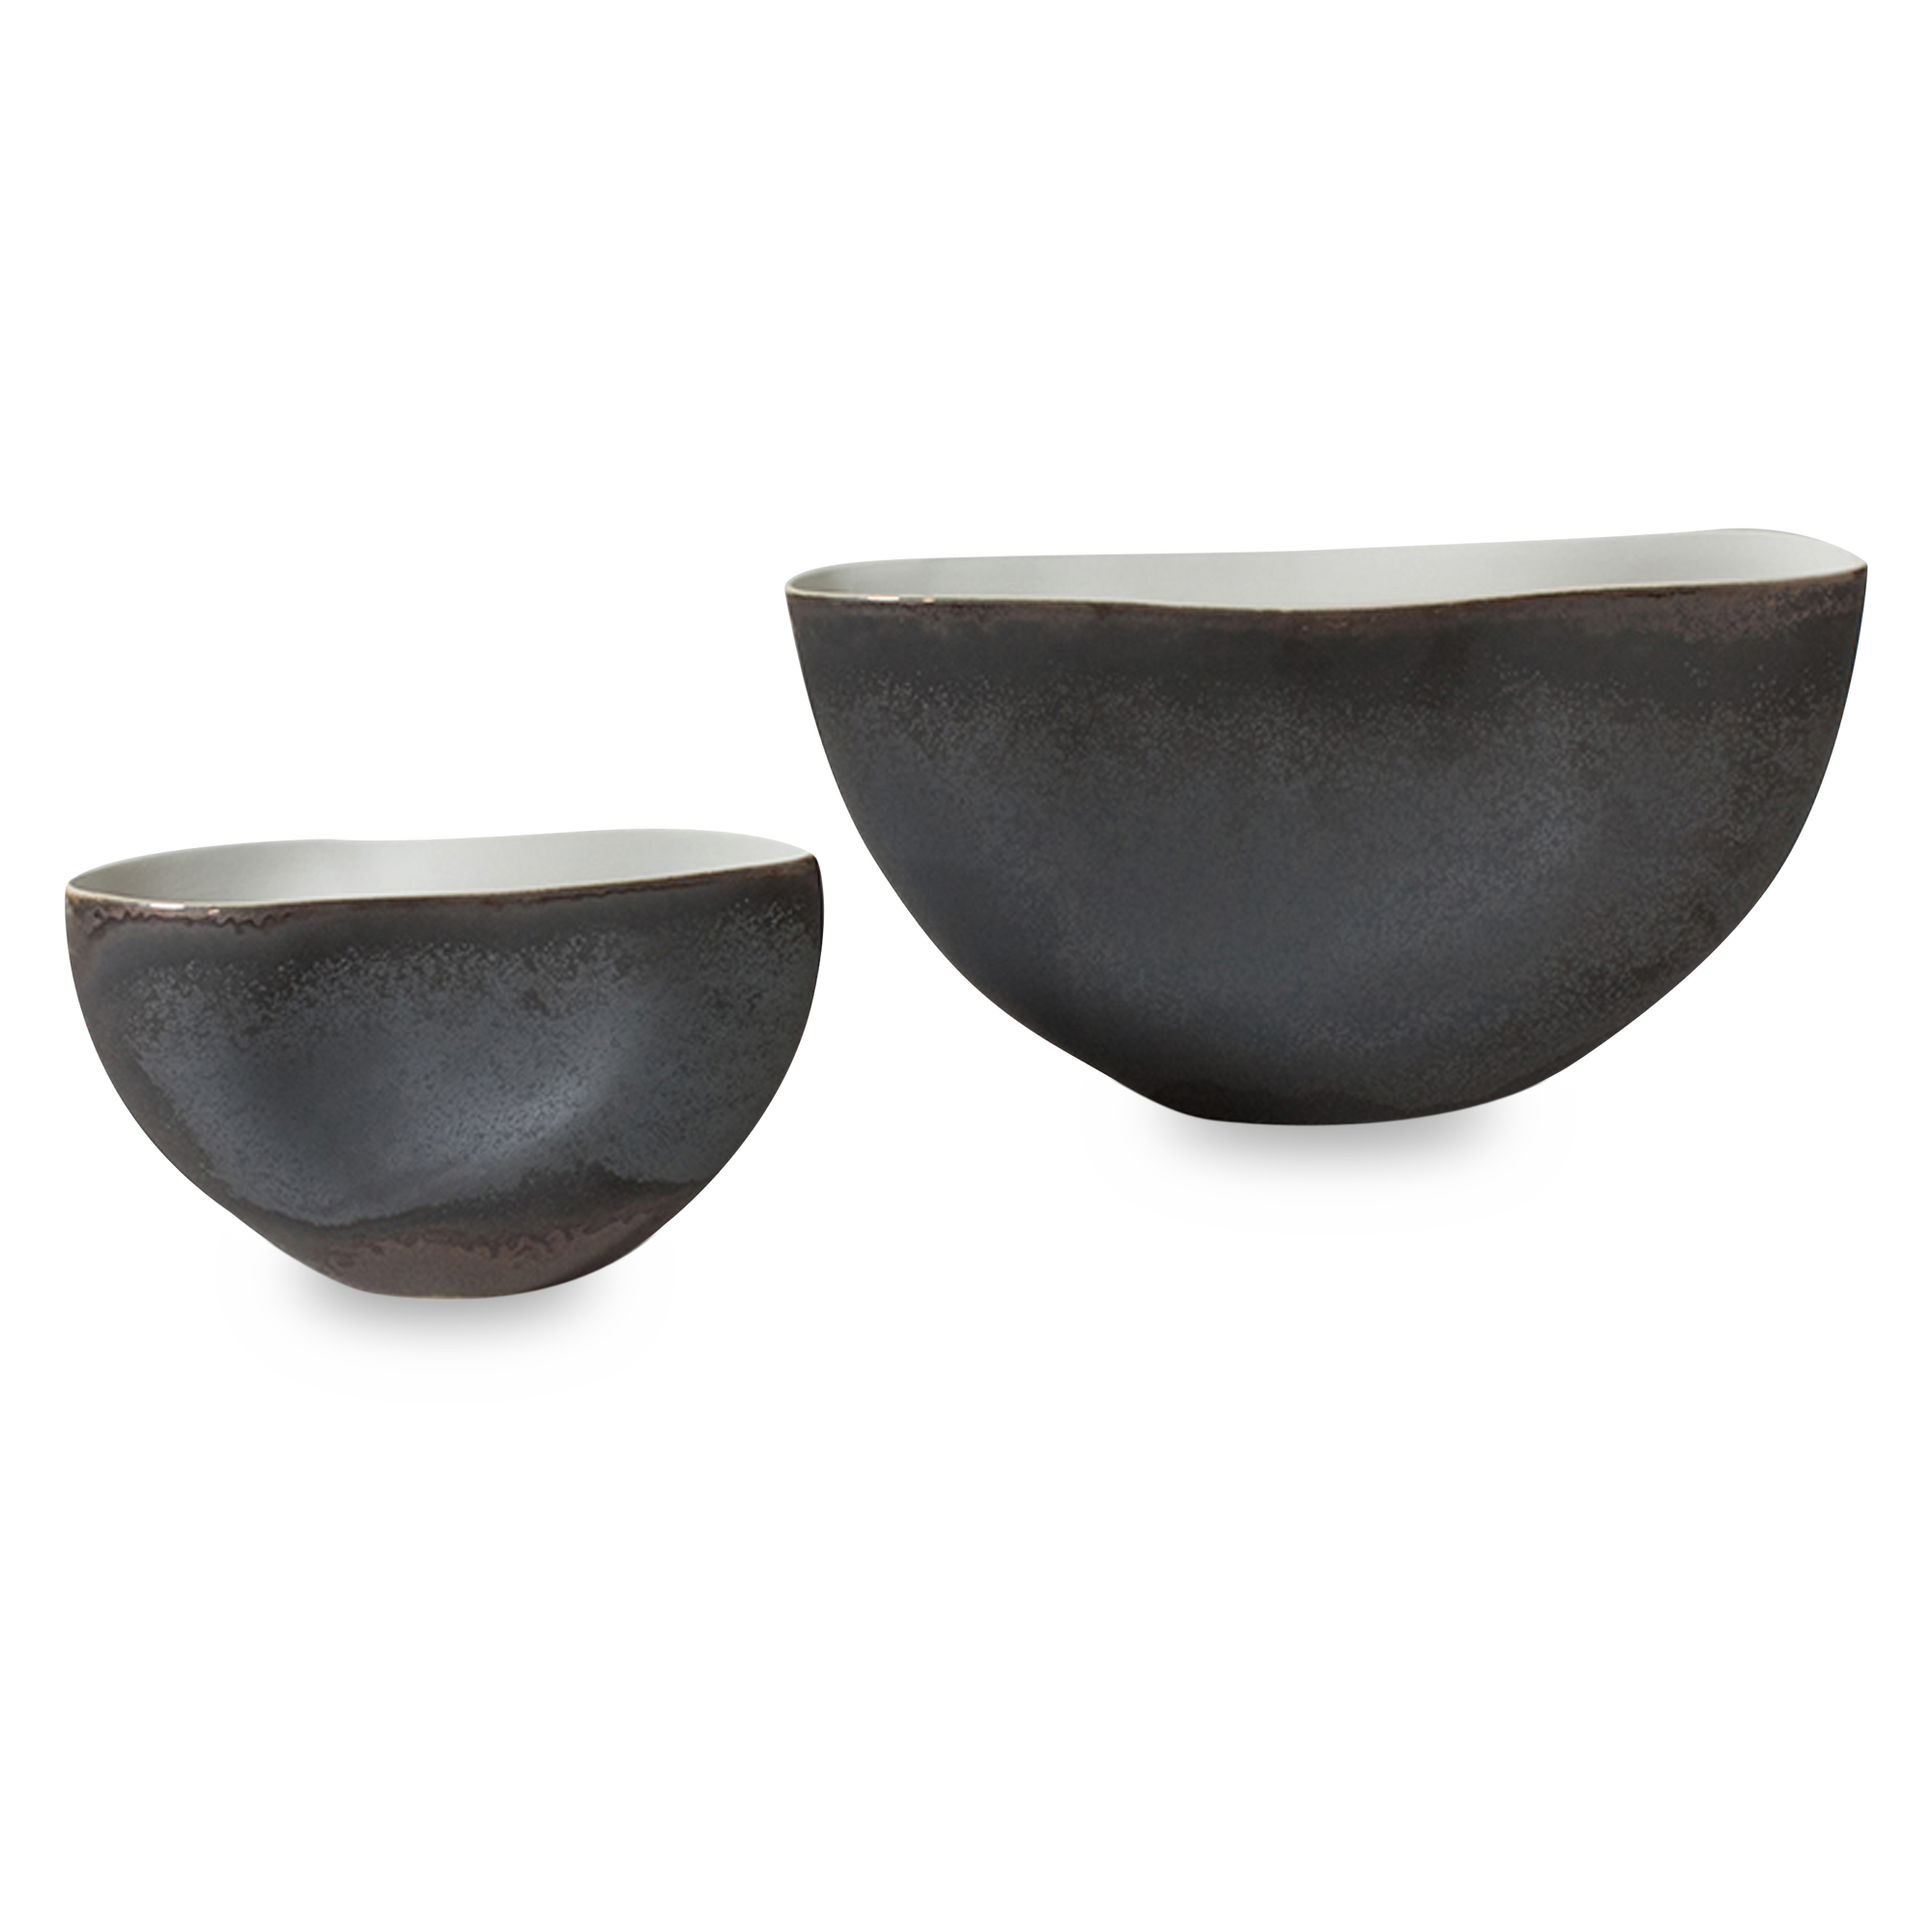 A highly reactive Raku-like glaze on porcelain.